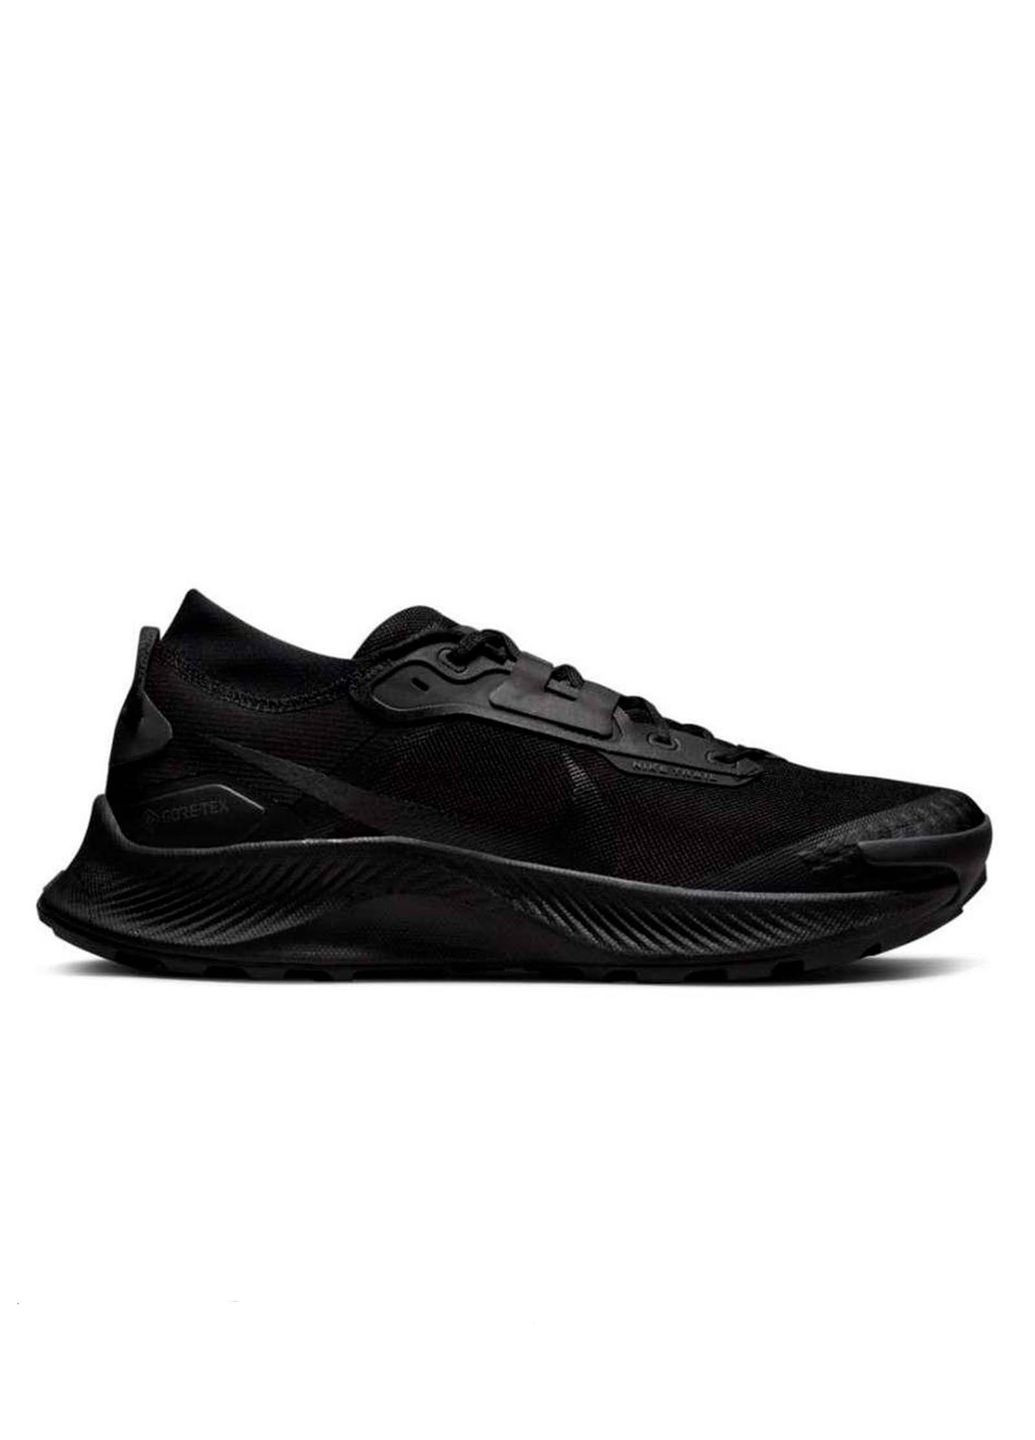 Черные всесезонные мужские кроссовки pegasus trail 3 gtx dc8793-001 весна-осень текстиль синтетика мембрана черные Nike